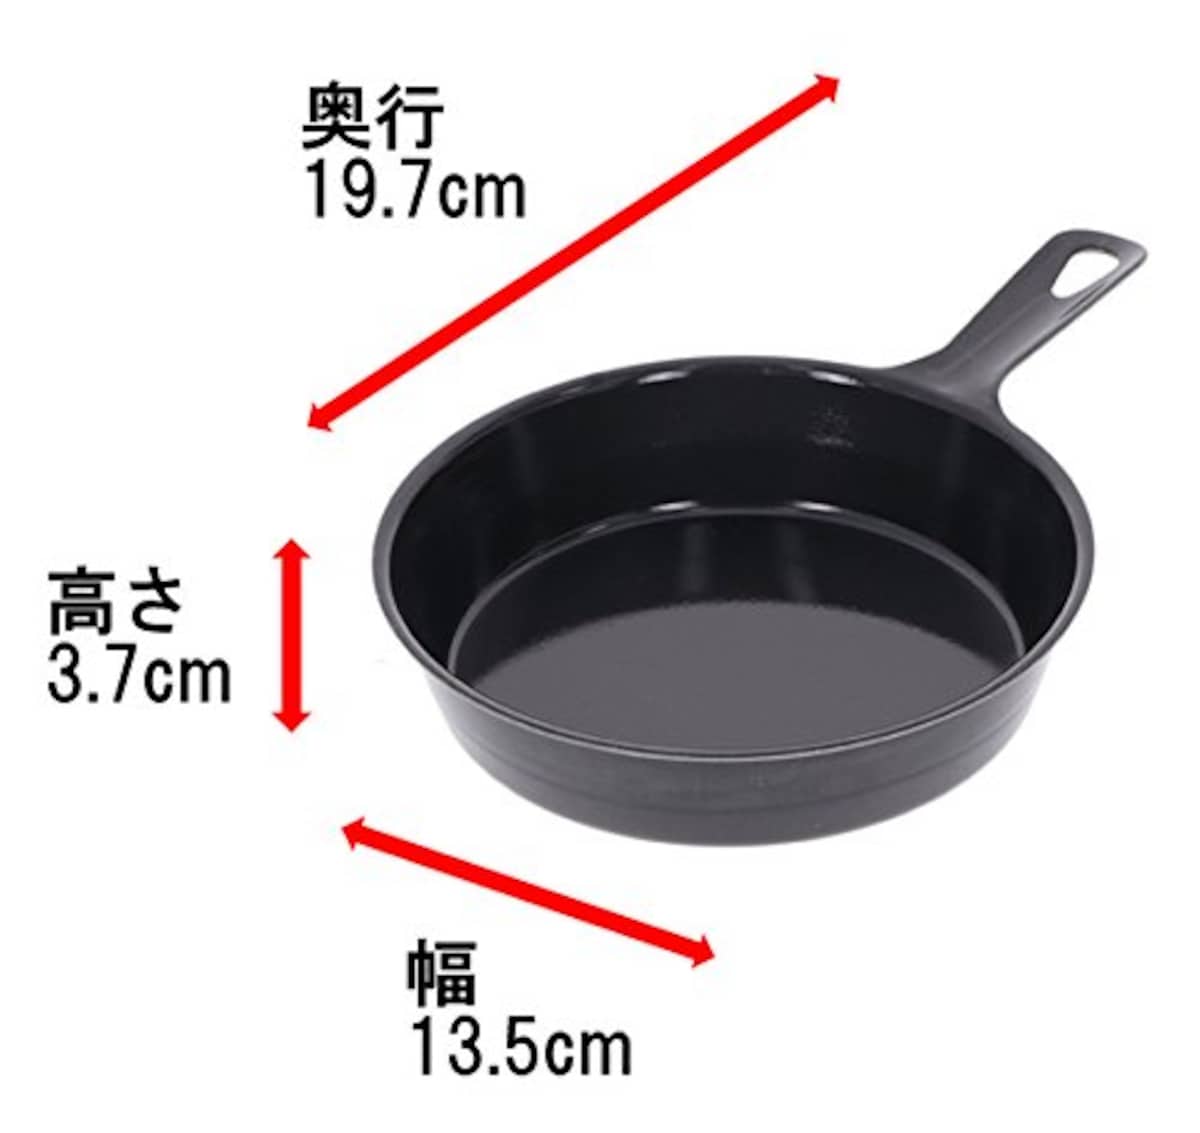  髙儀(Takagi) ミニ グリルパン 13cm 直火可能 オーブン グリル料理 高い蓄熱性 冷めにくい 小さめサイズ フライパン 鉄 料理 お菓子作り アウトドア 日本製 高儀 たかぎ TAKAGI画像2 